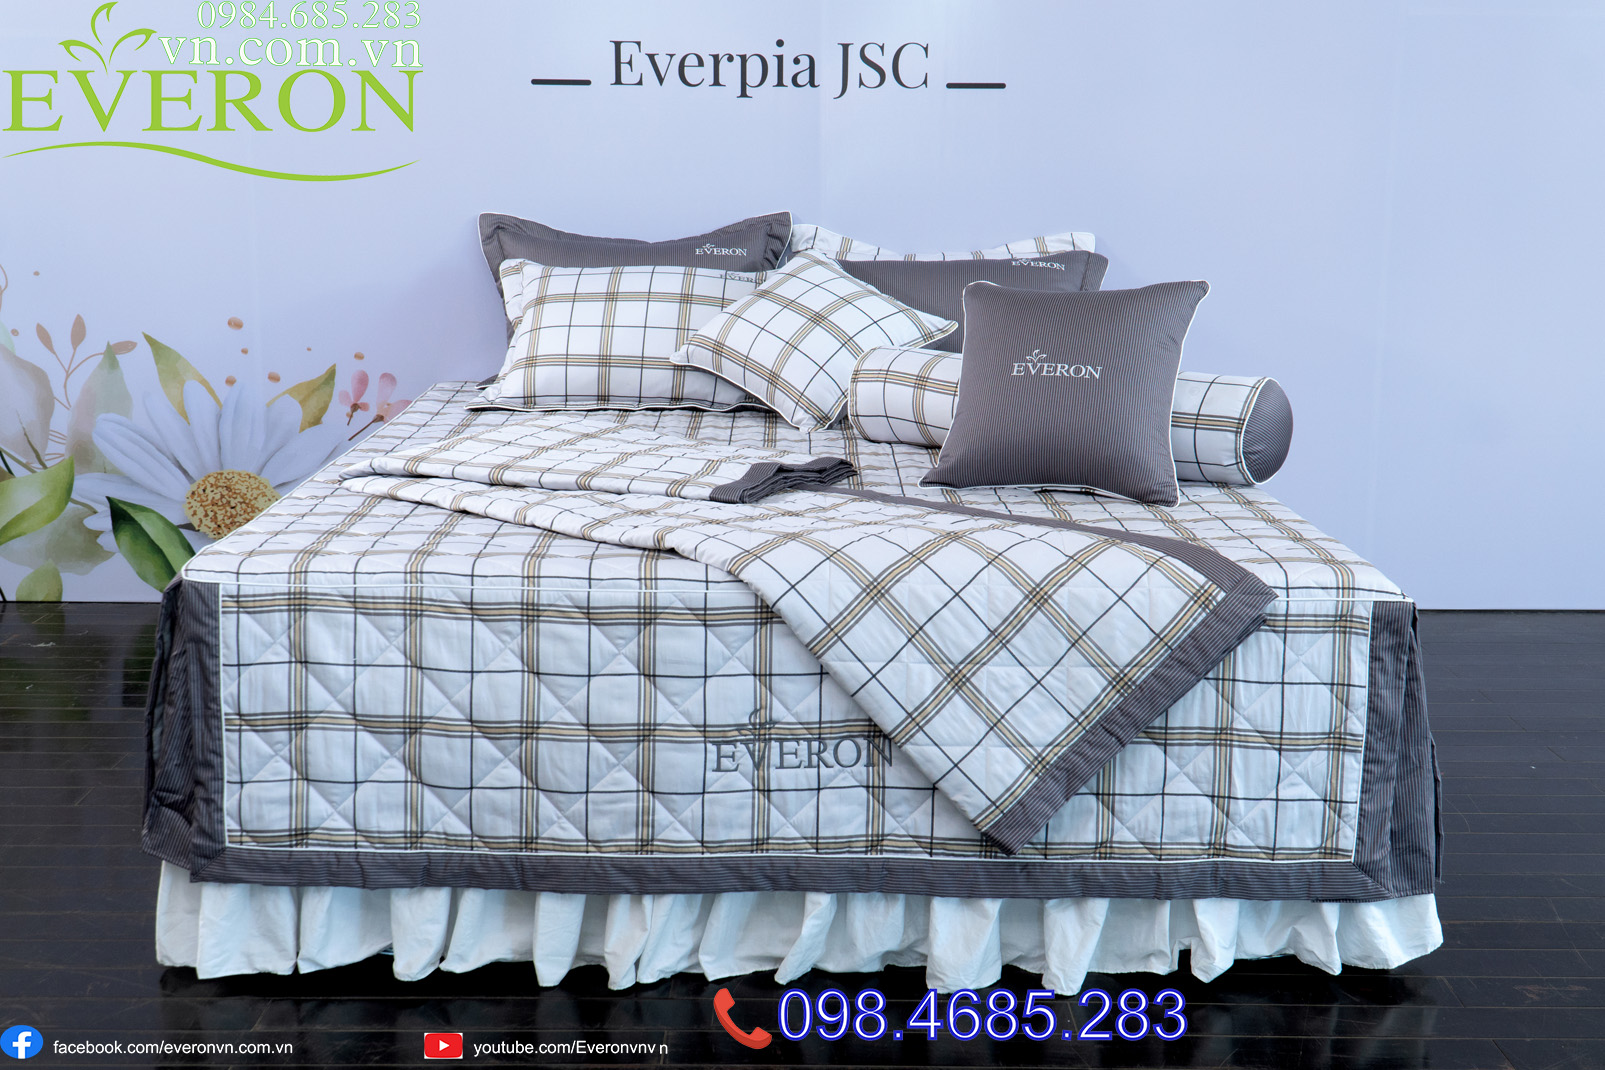 Bộ Everon ESC-22056